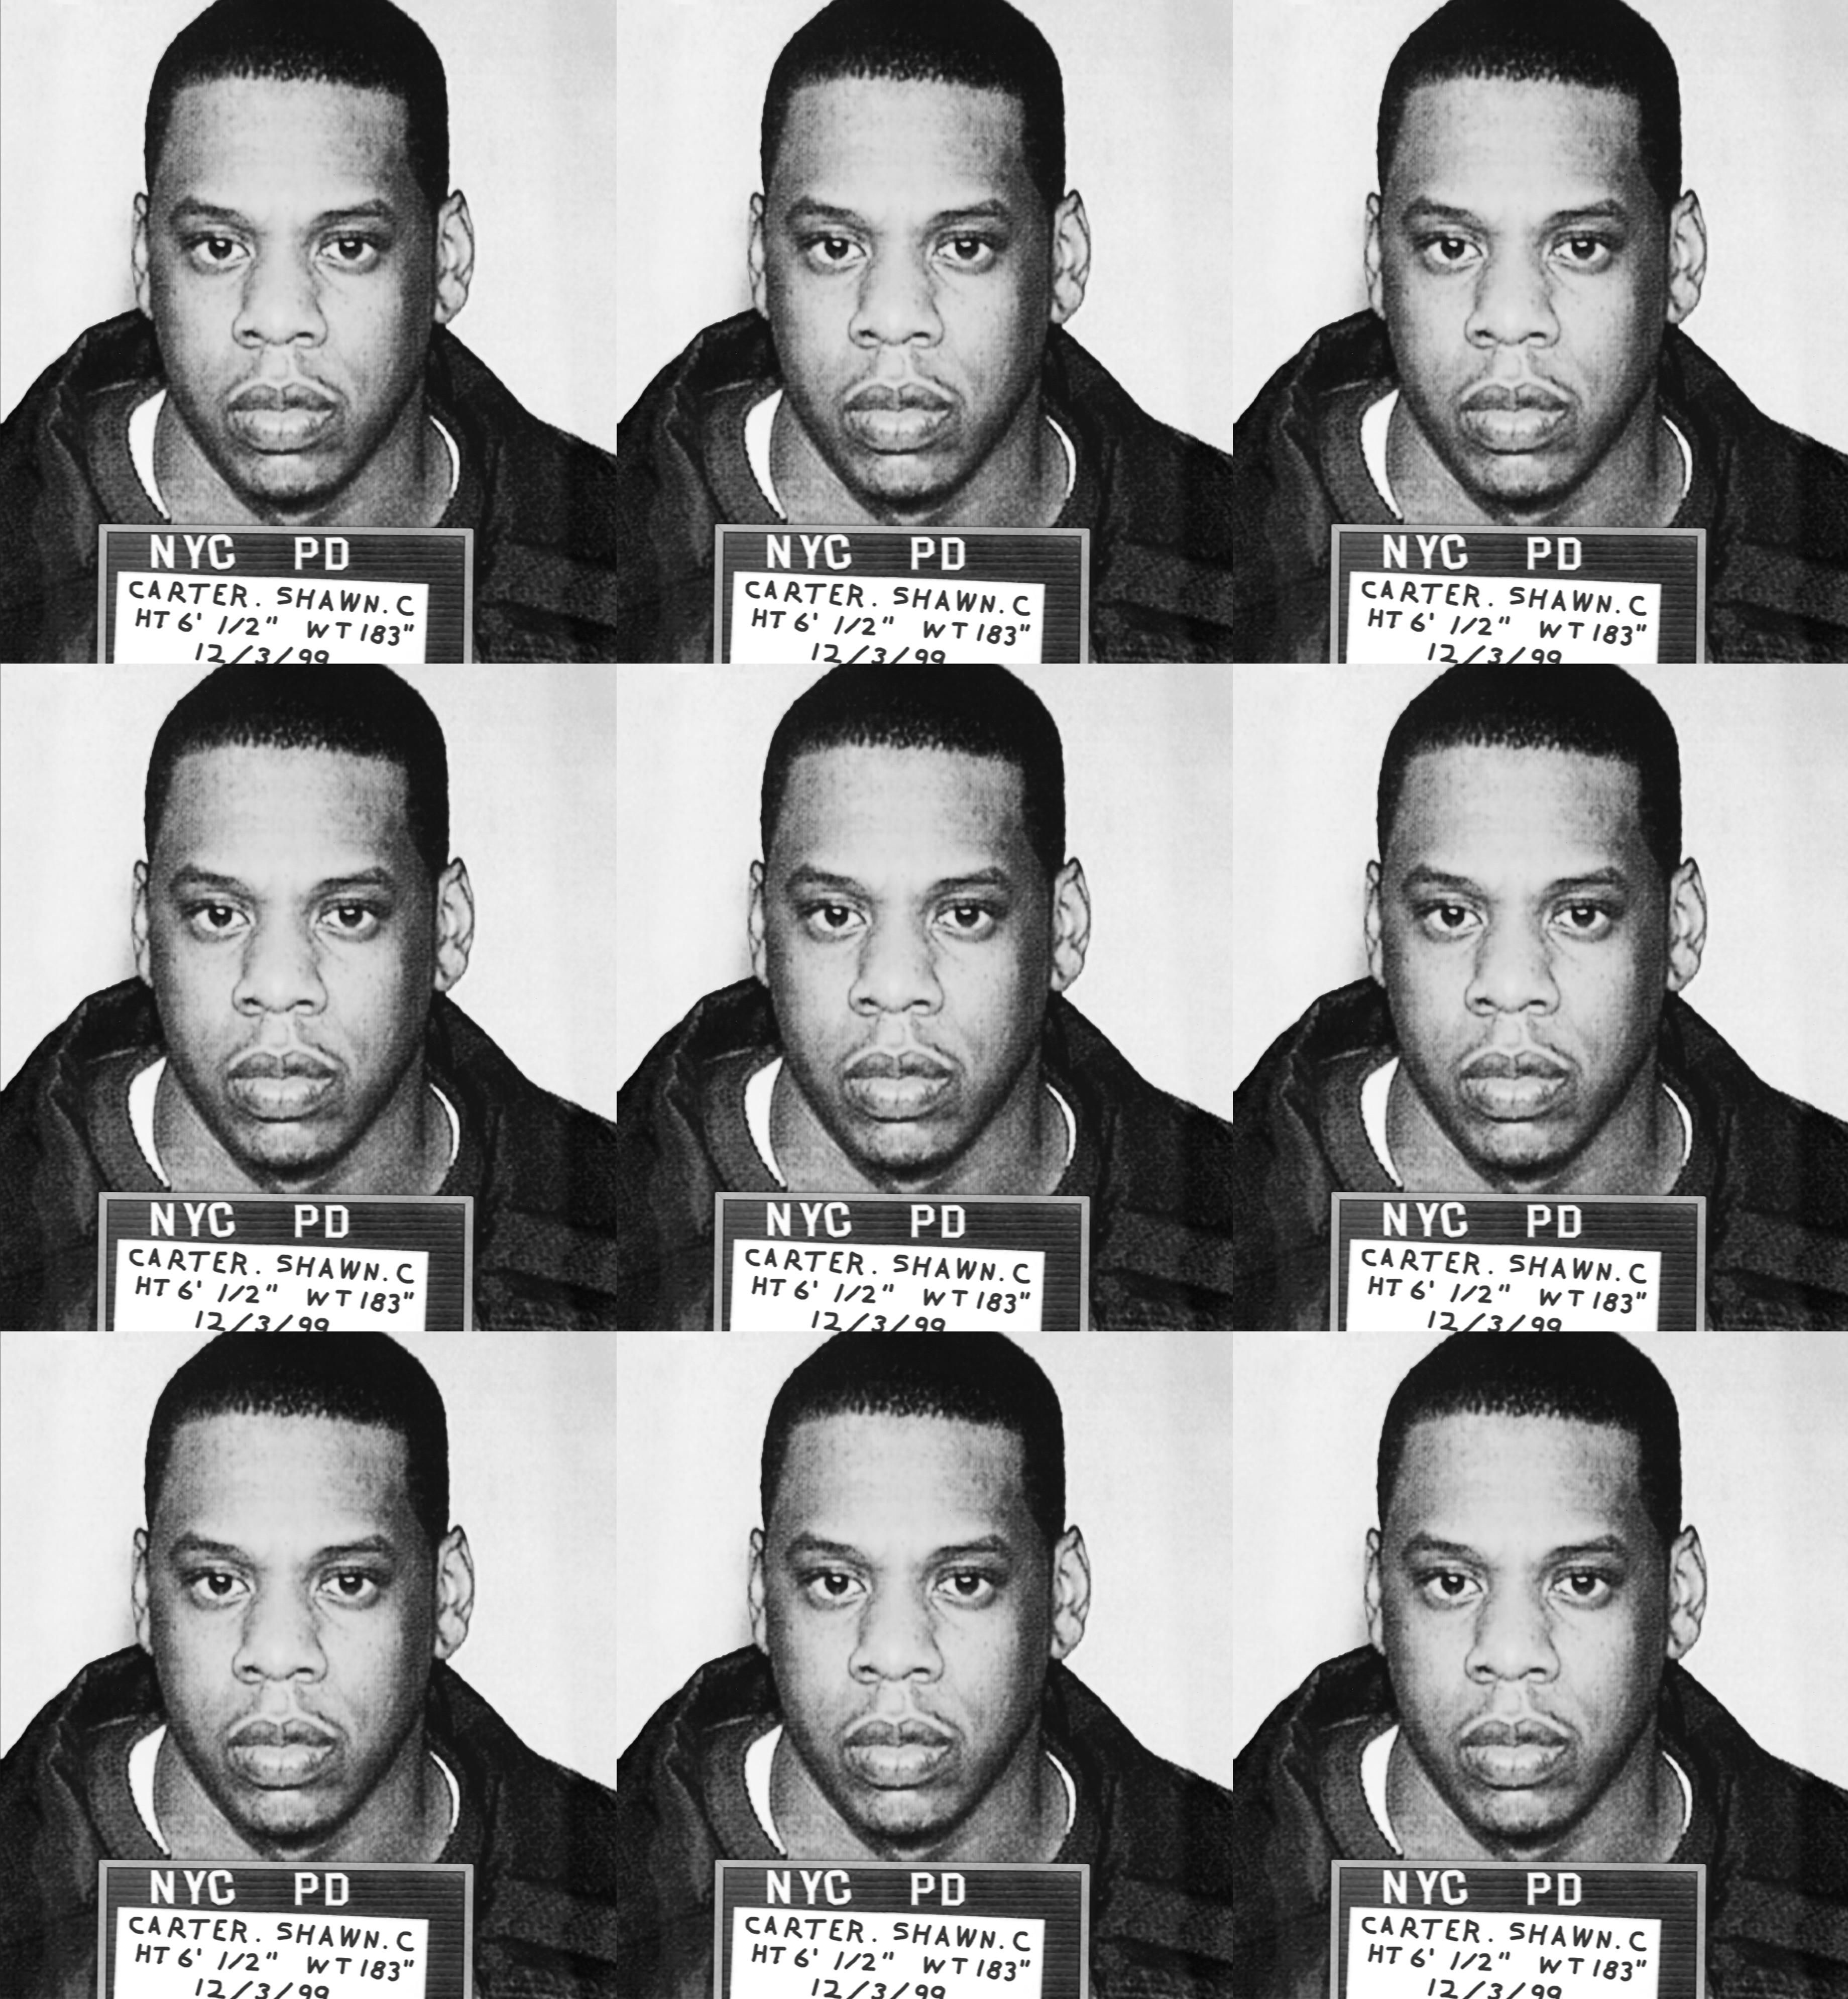 "Jay Z Mugshot" Gravure sur toile 39 x 36 pouces Ed. of 75 by Gerard Marti

Impression giclée sur toile
Tendus sur des barres de bois. 
Signé et numéroté par l'artiste. 


La star du rap Jay Z (de son vrai nom Shawn Carter) a été arrêtée par la